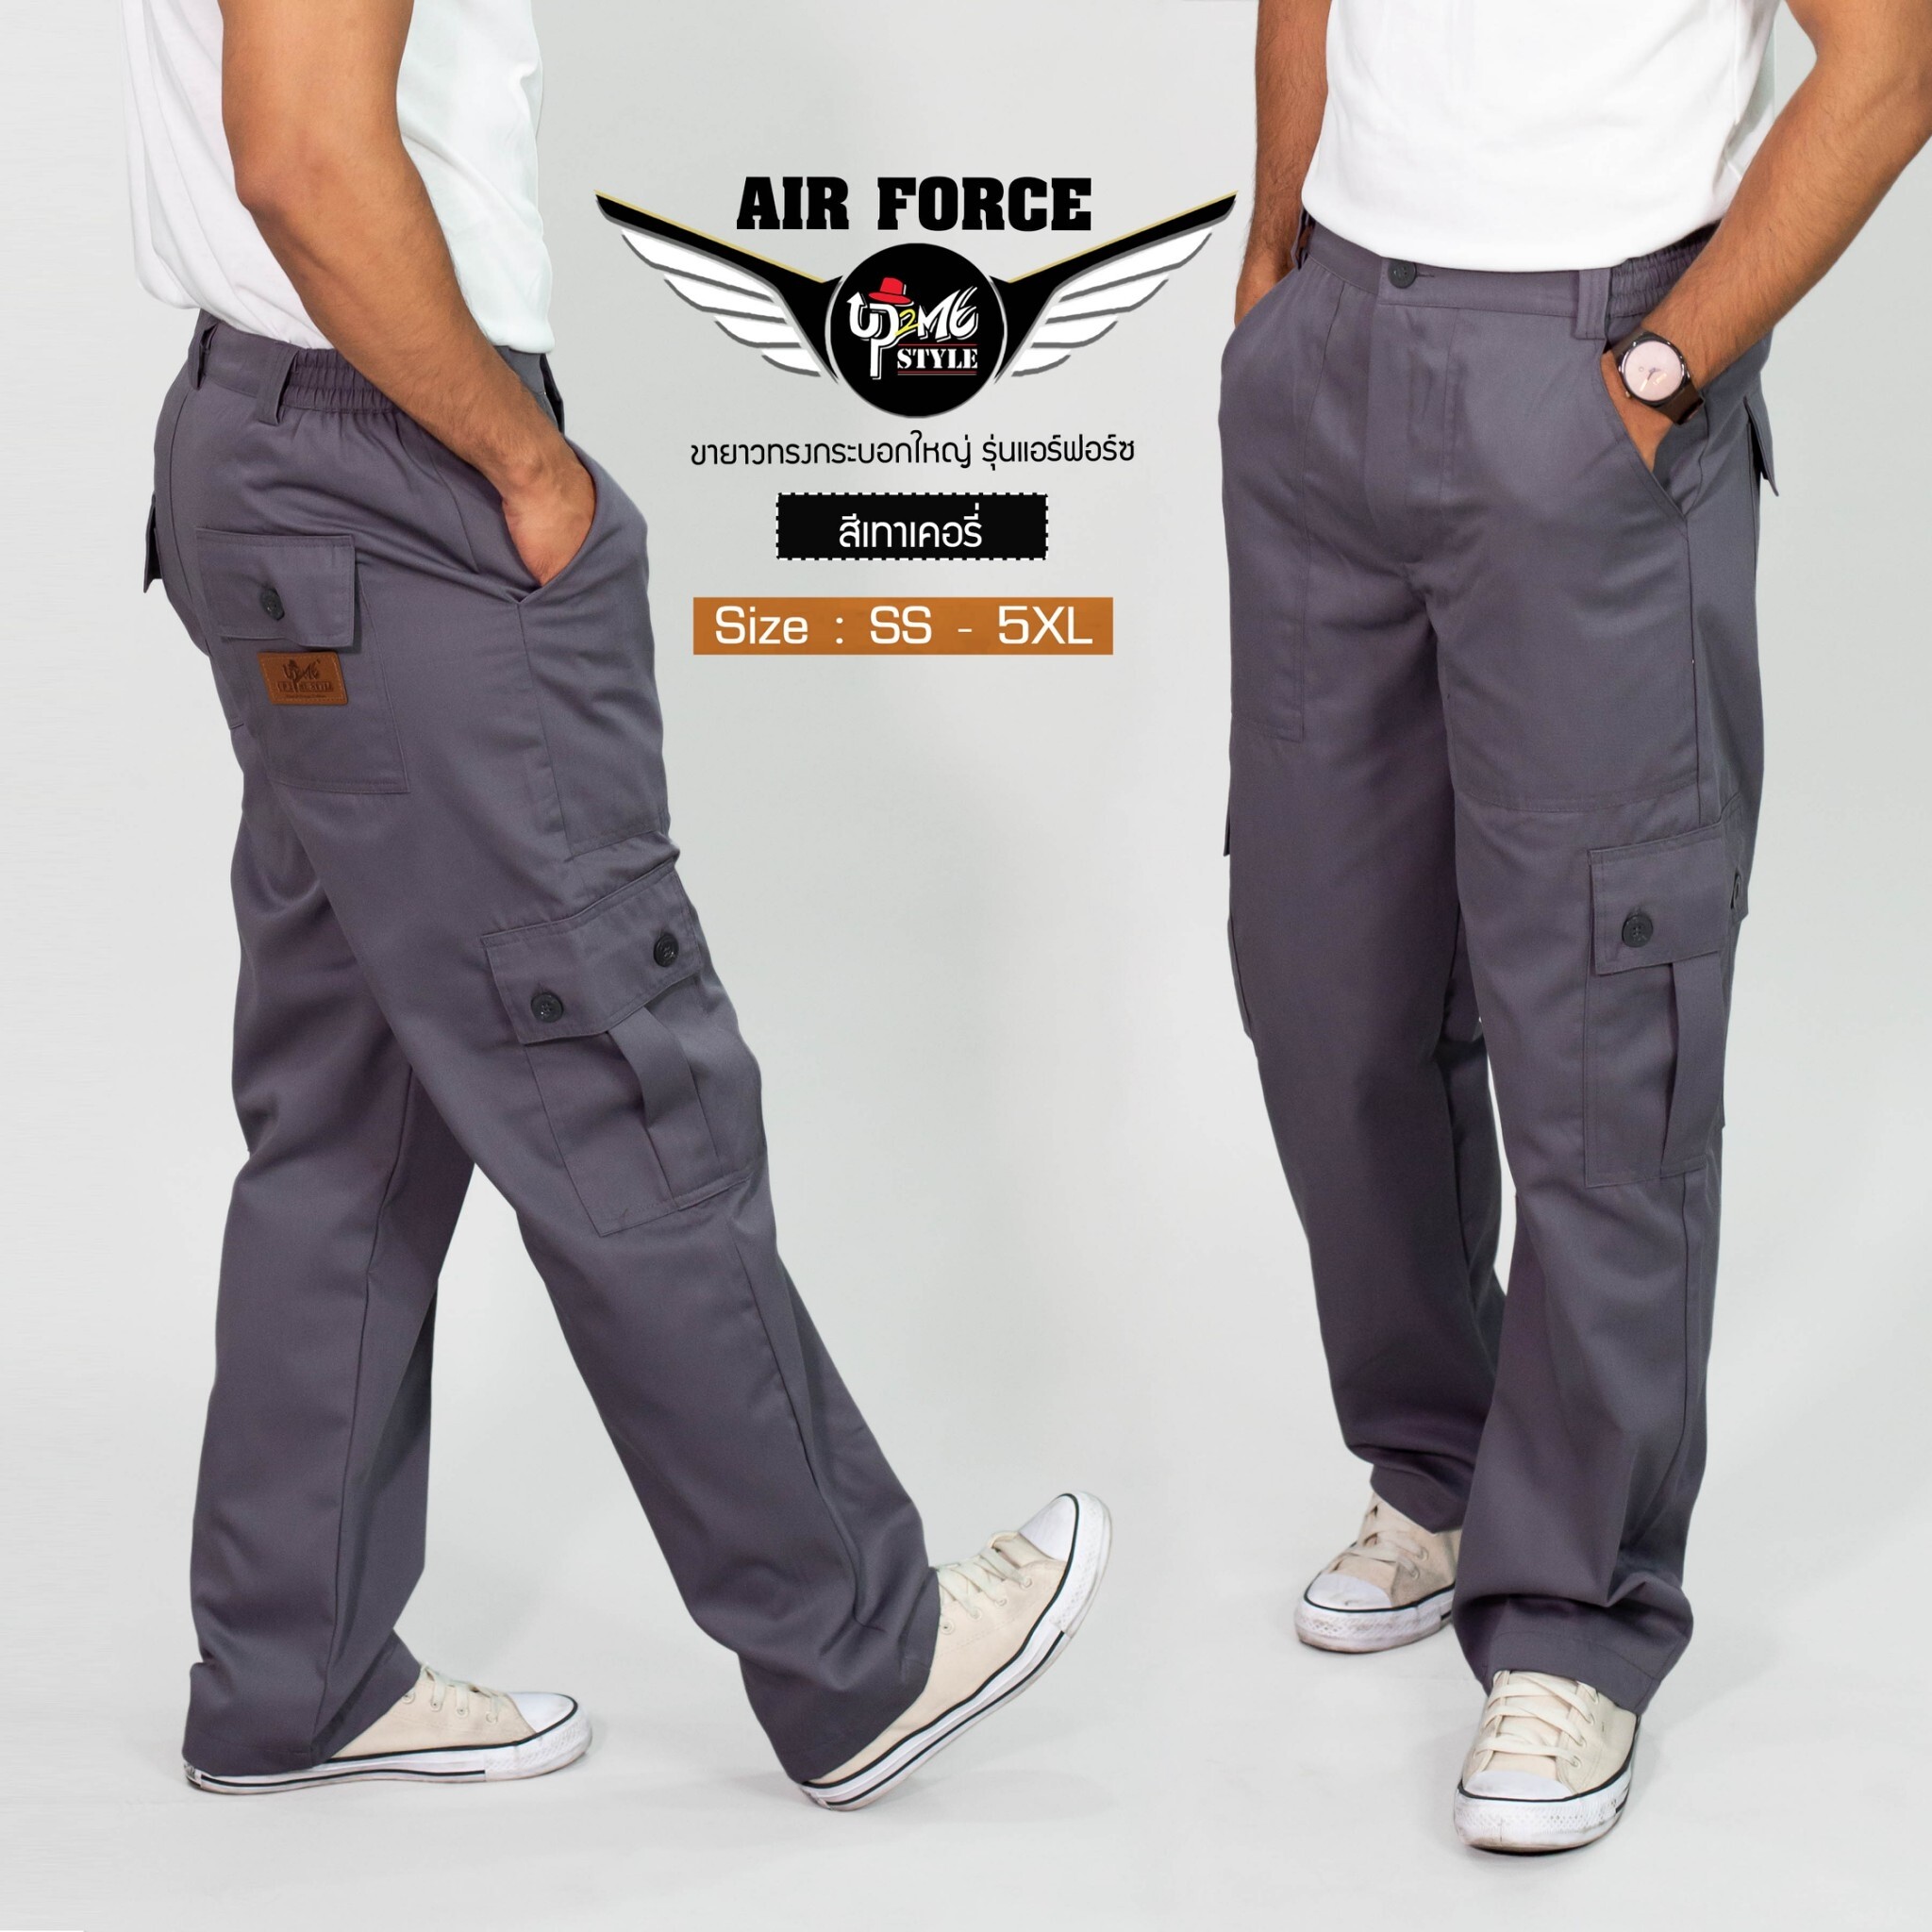 กางเกงคาร์โก้ UP2ME รุ่น AIR FORCE ขายาว (สีเทาเคอรี่่) ทรงกระบอกใหญ่ มีไซส์ เอว 26 - 46 นิ้ว (SS - 4XL) กางเกงช่าง กางเกงลุยป่า กระเป๋าข้าง